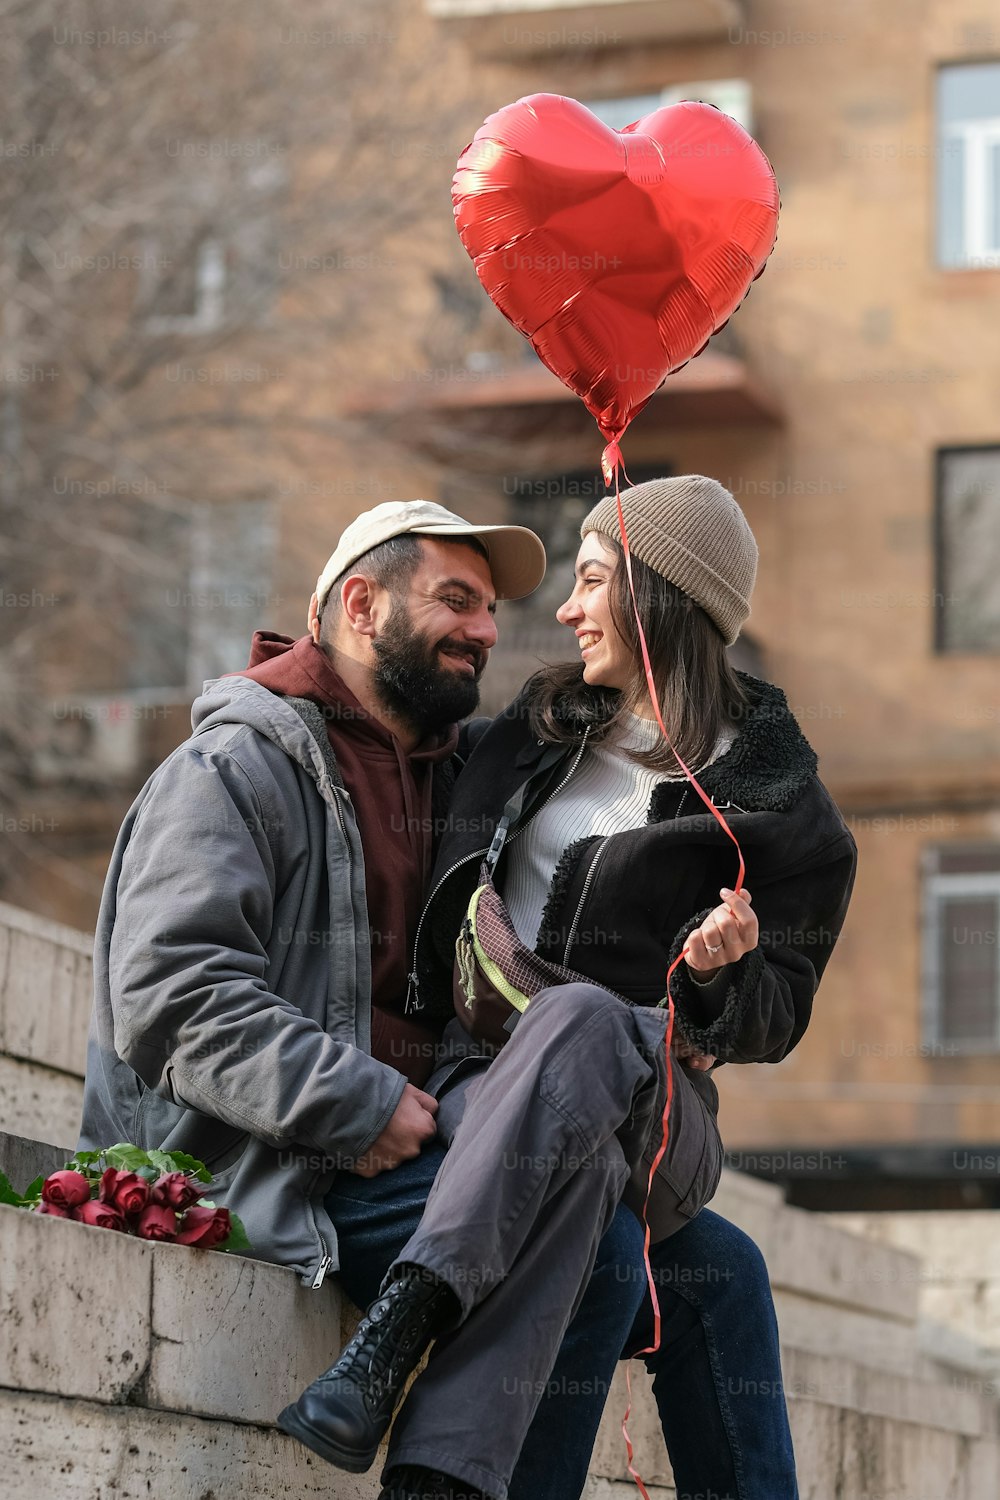 Un hombre y una mujer sentados en una pared con un globo en forma de corazón